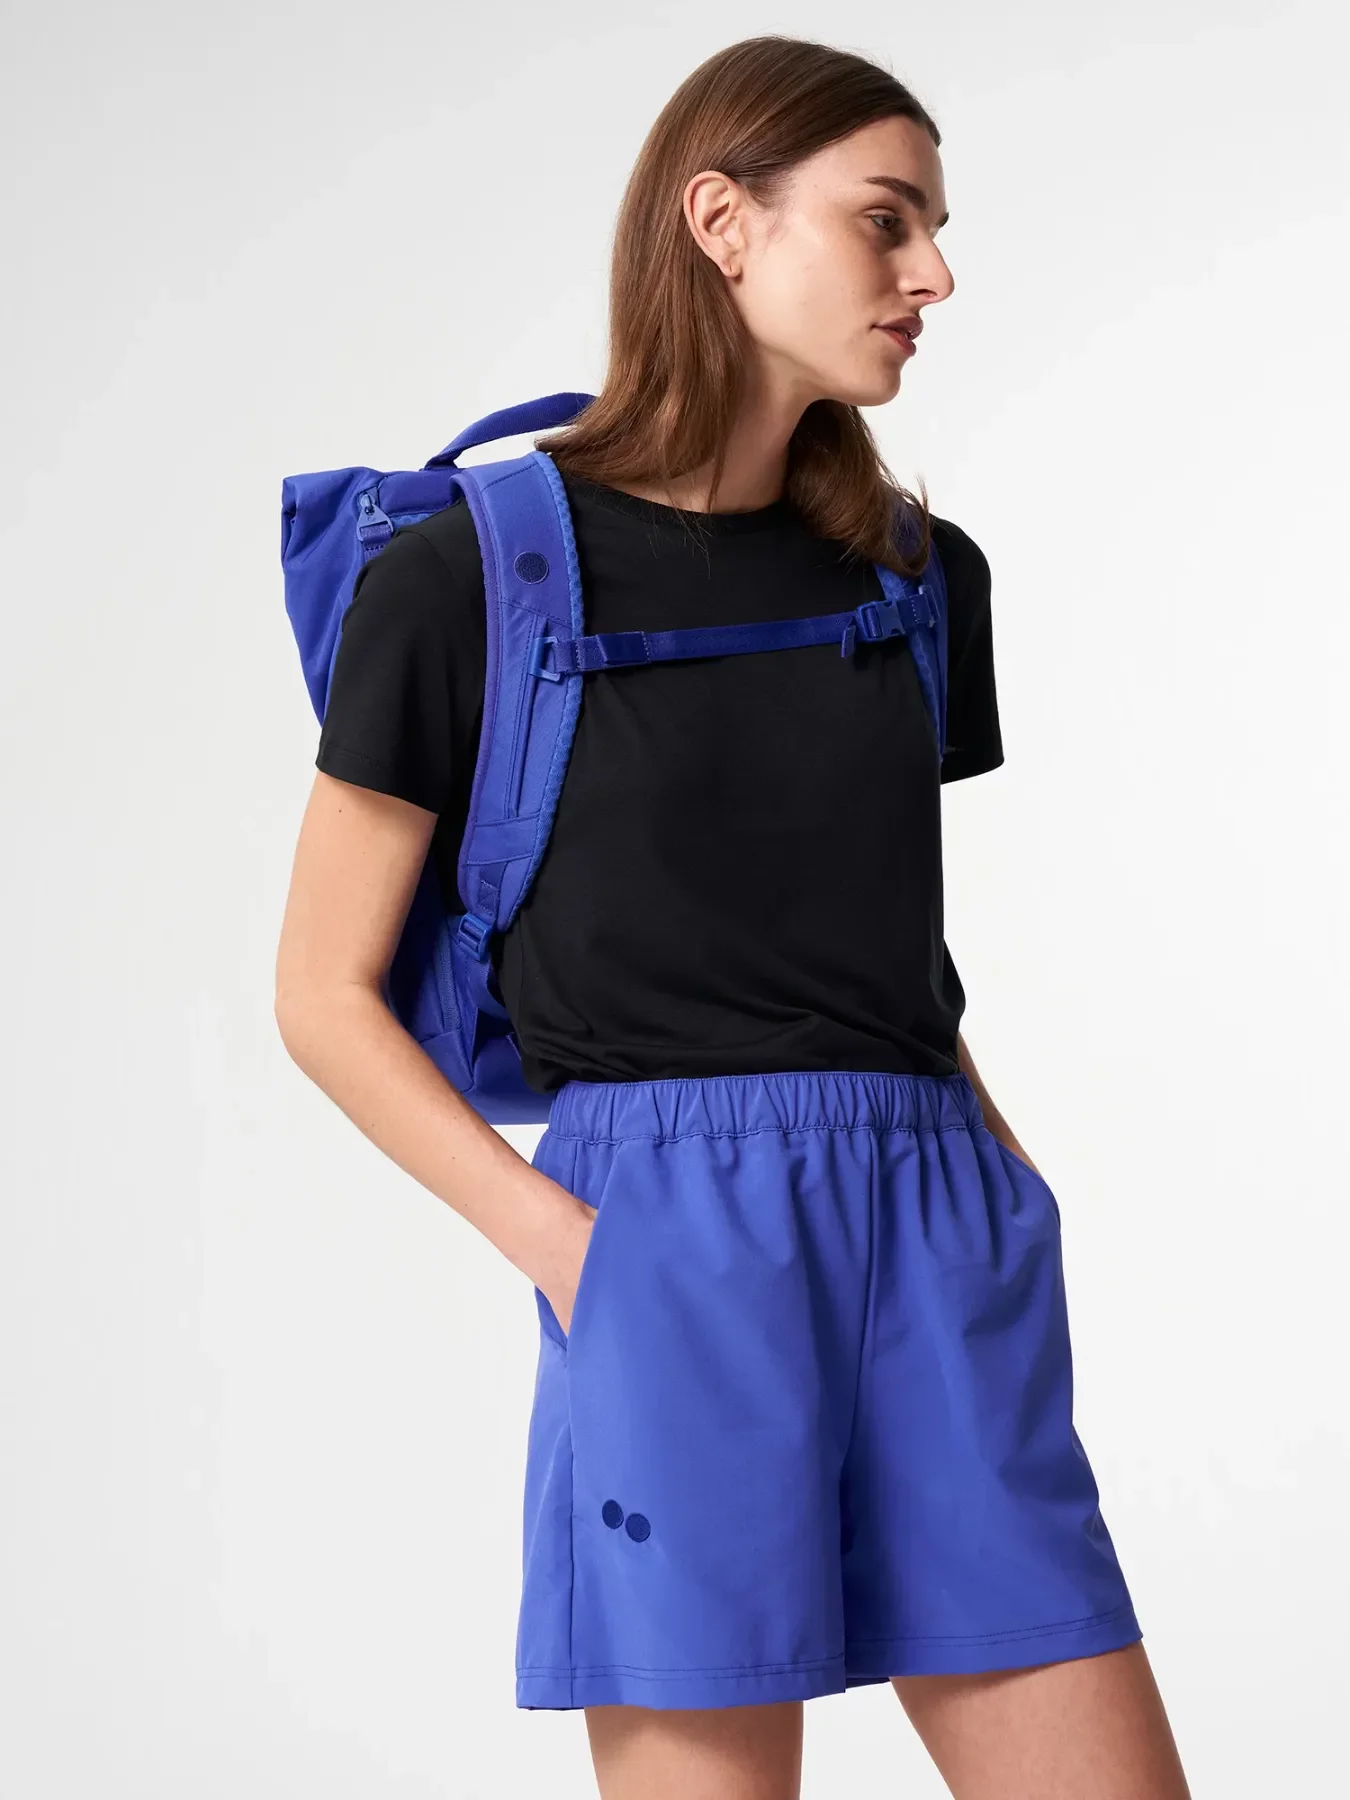 pinqponq Backpack KROSS - Poppy Blue 5